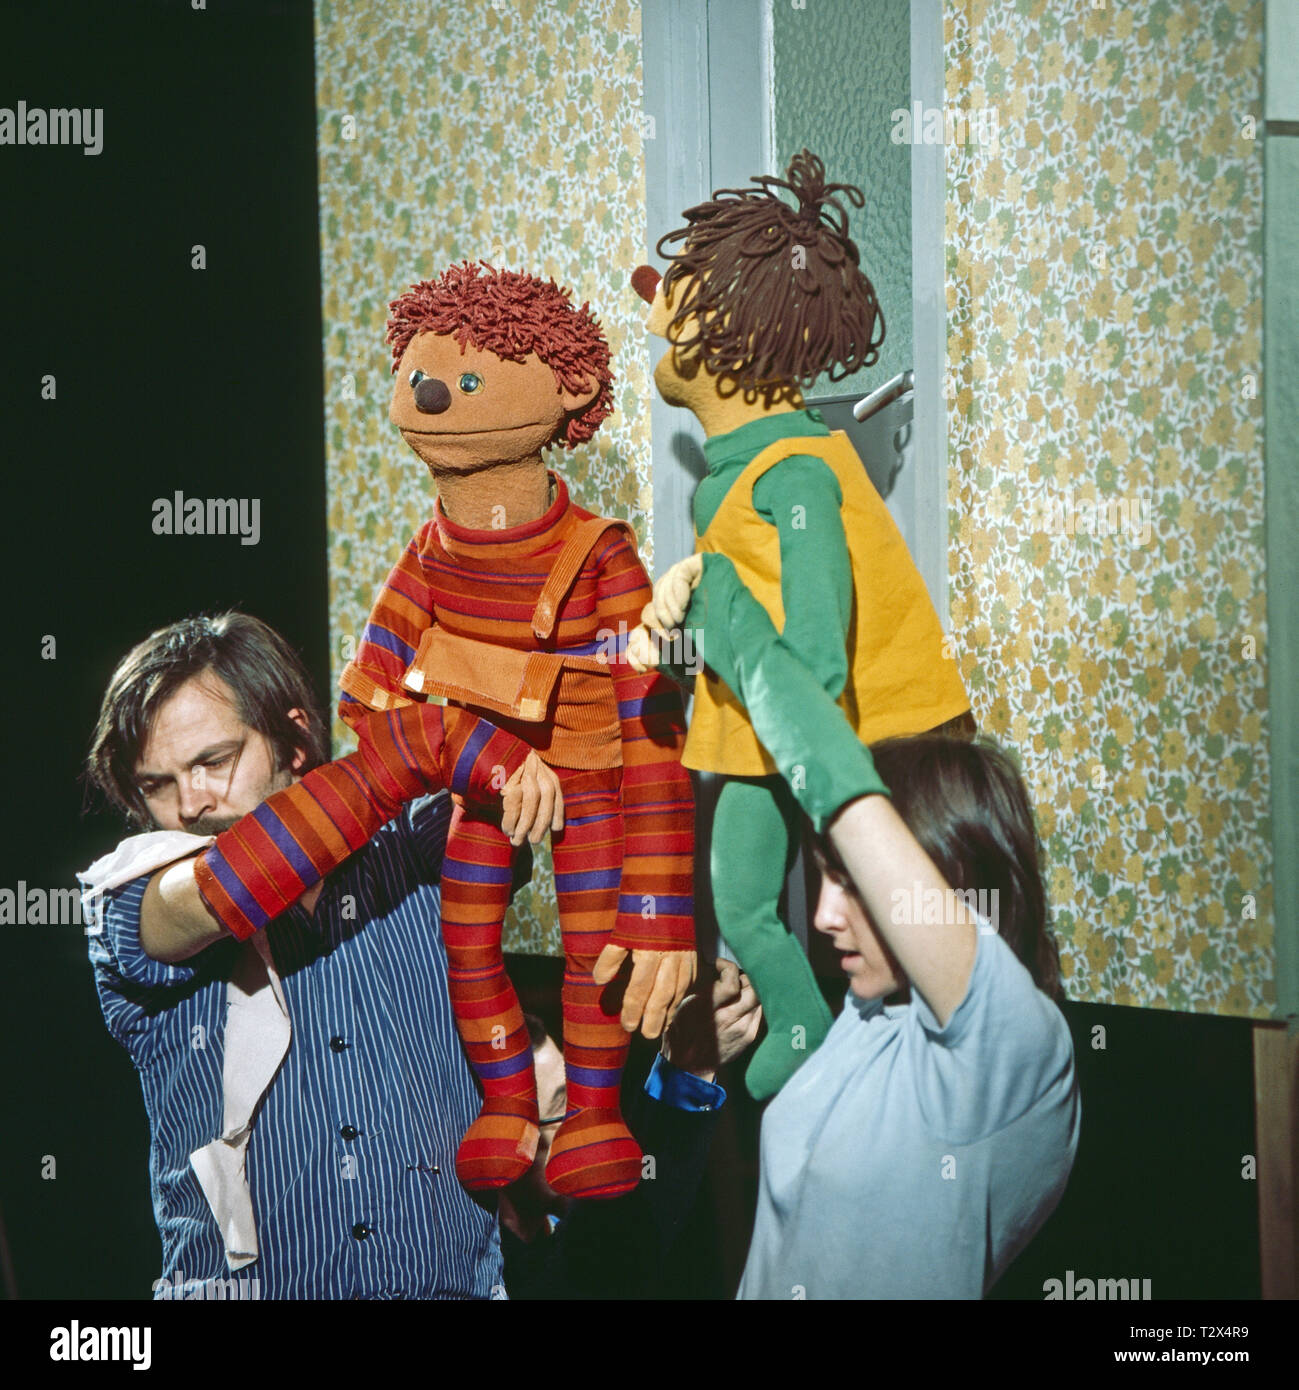 Rappelkiste, Fernsehserie, Episode 'Wie wird das im Fernsehen gemacht?', Puppenspieler Kristov Brändli mit der Puppe Ratz und Rita Ziegler mit der Puppe Rübe. Stock Photo